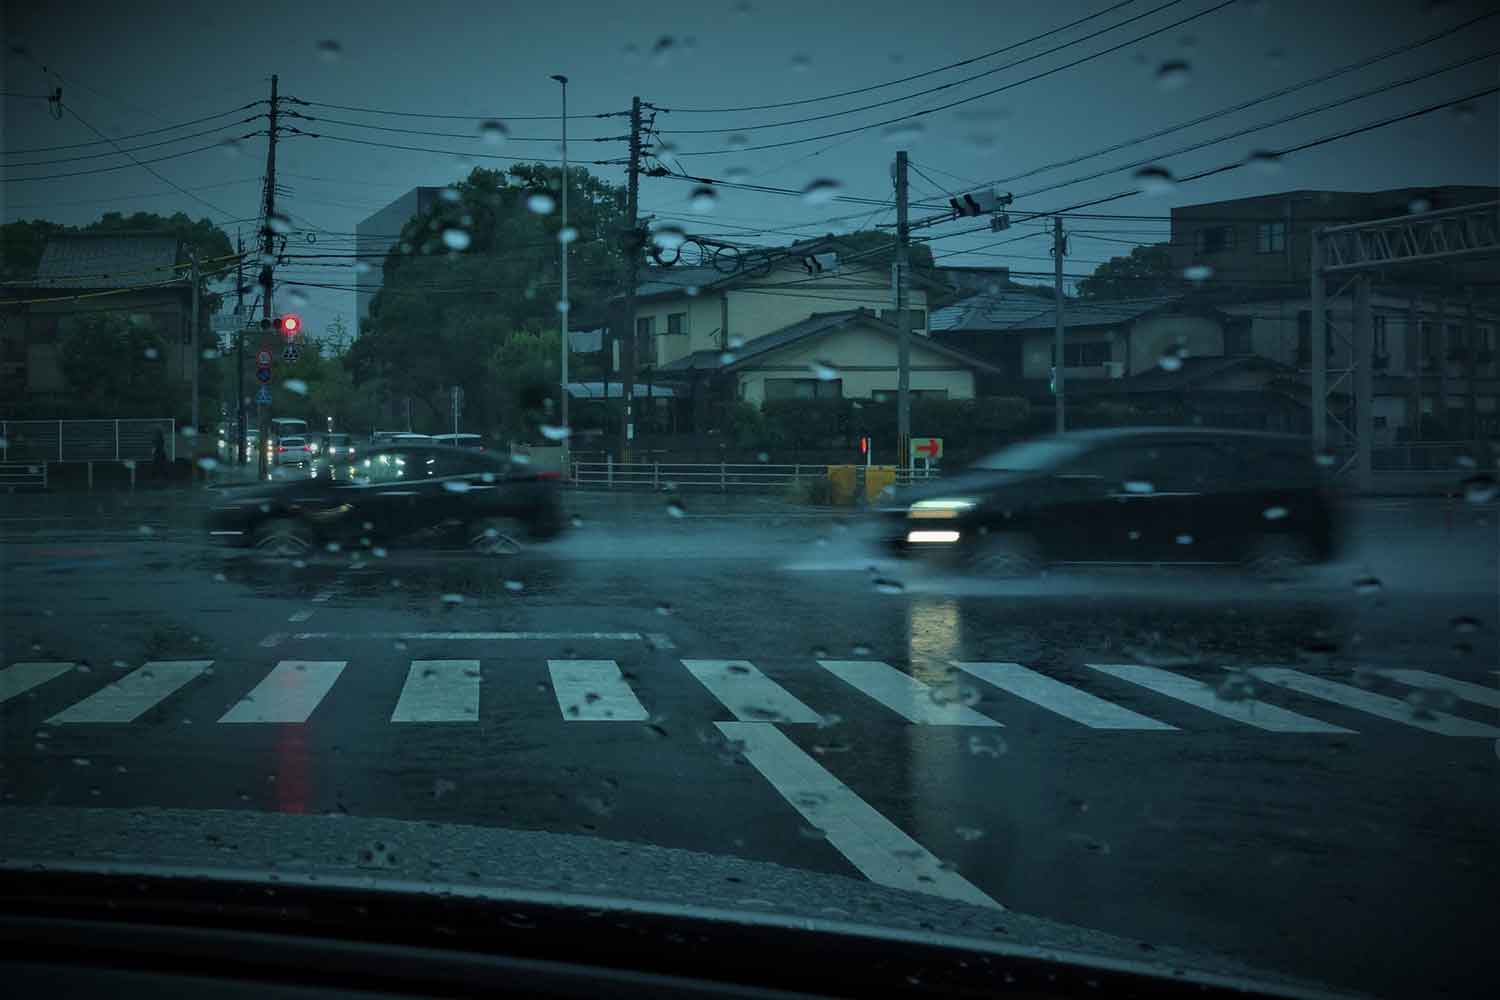 雨の一般道路のイメージ写真